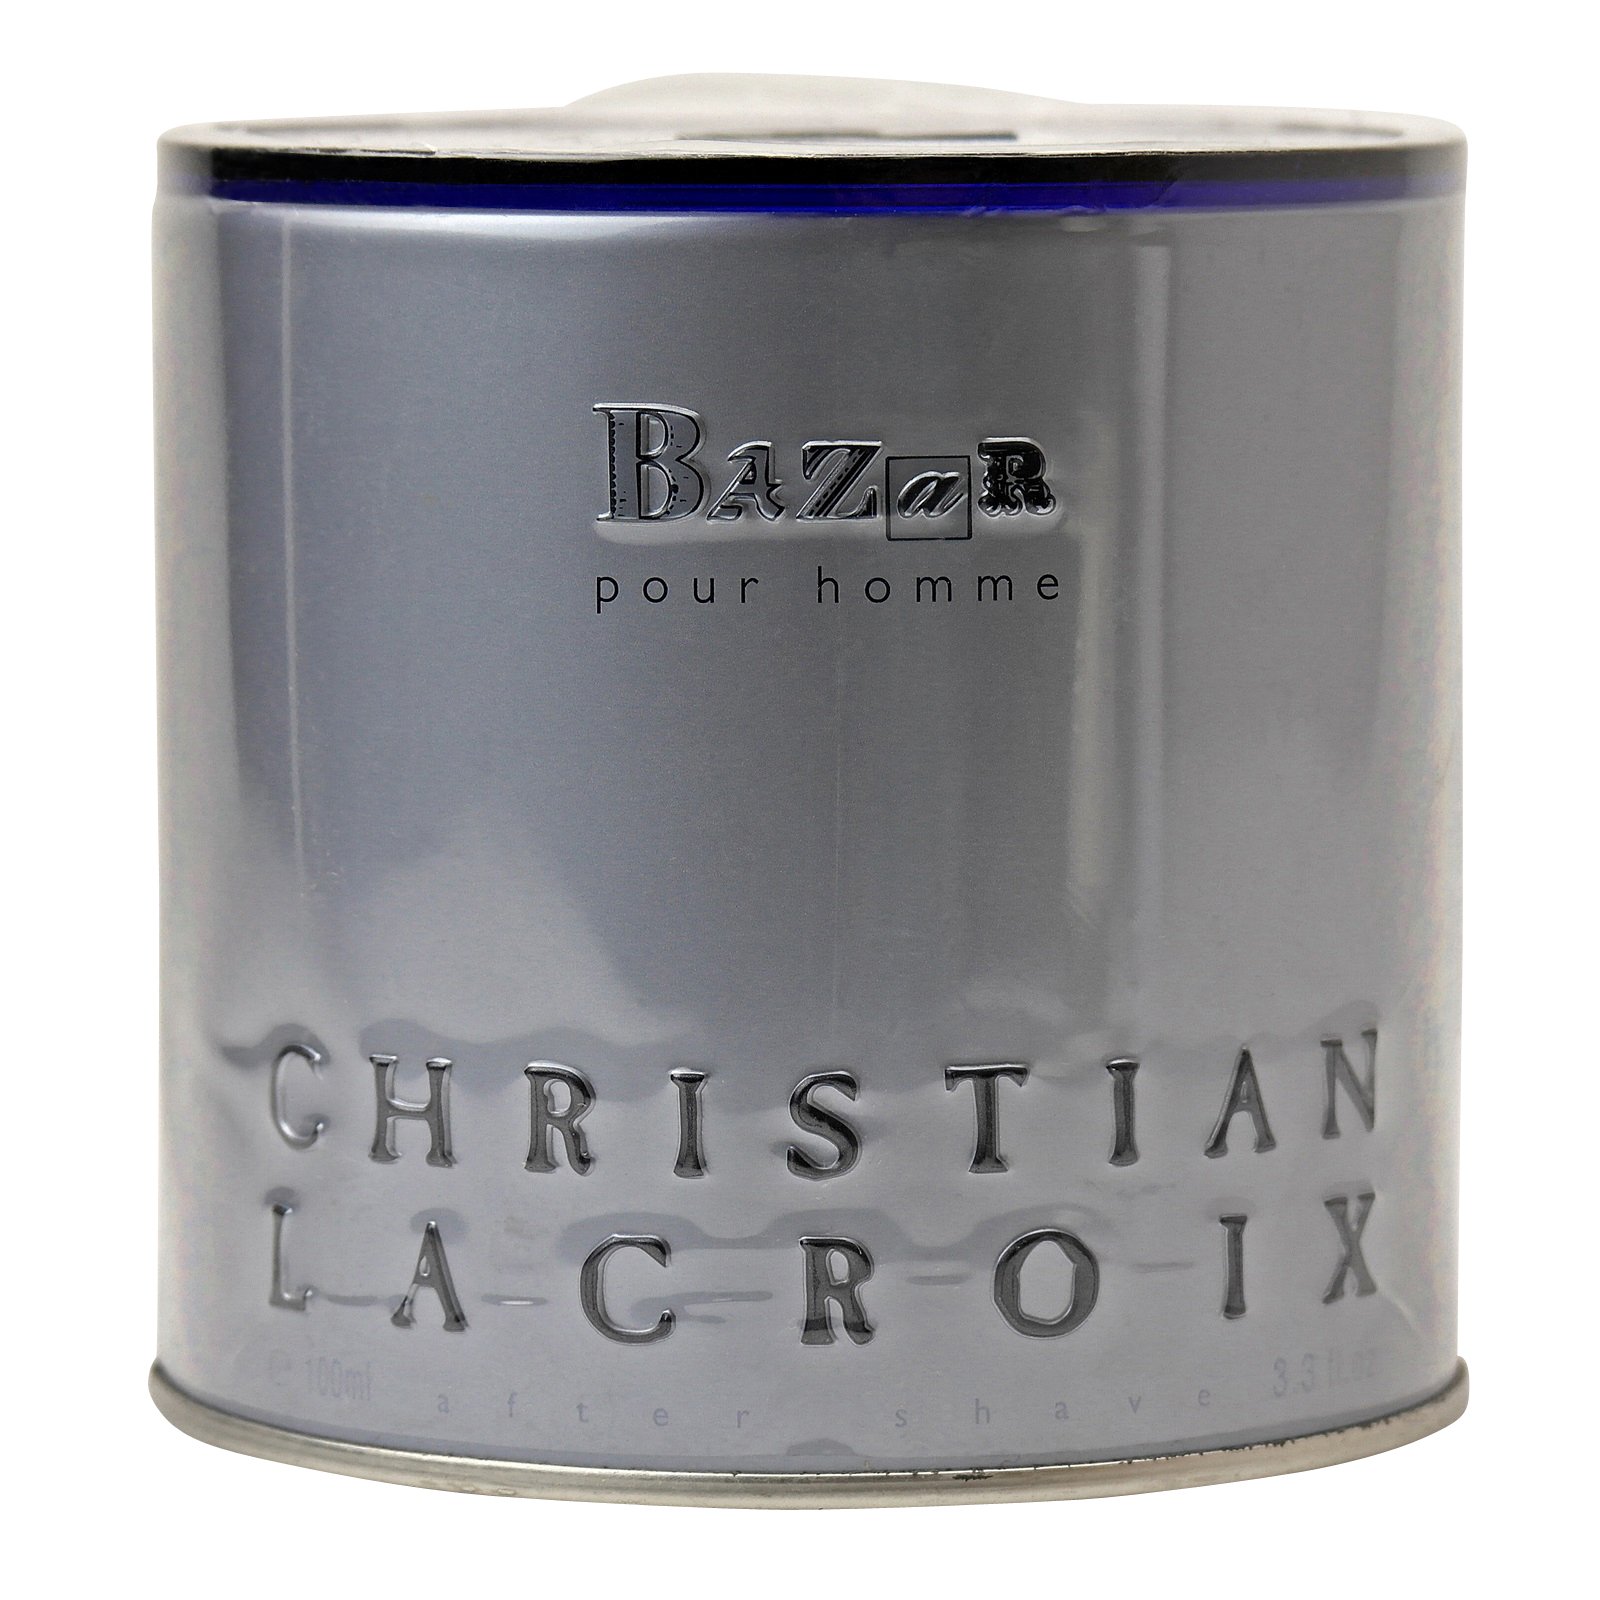 Christian Lacroix Bazar Homme Aftershave 100 ml